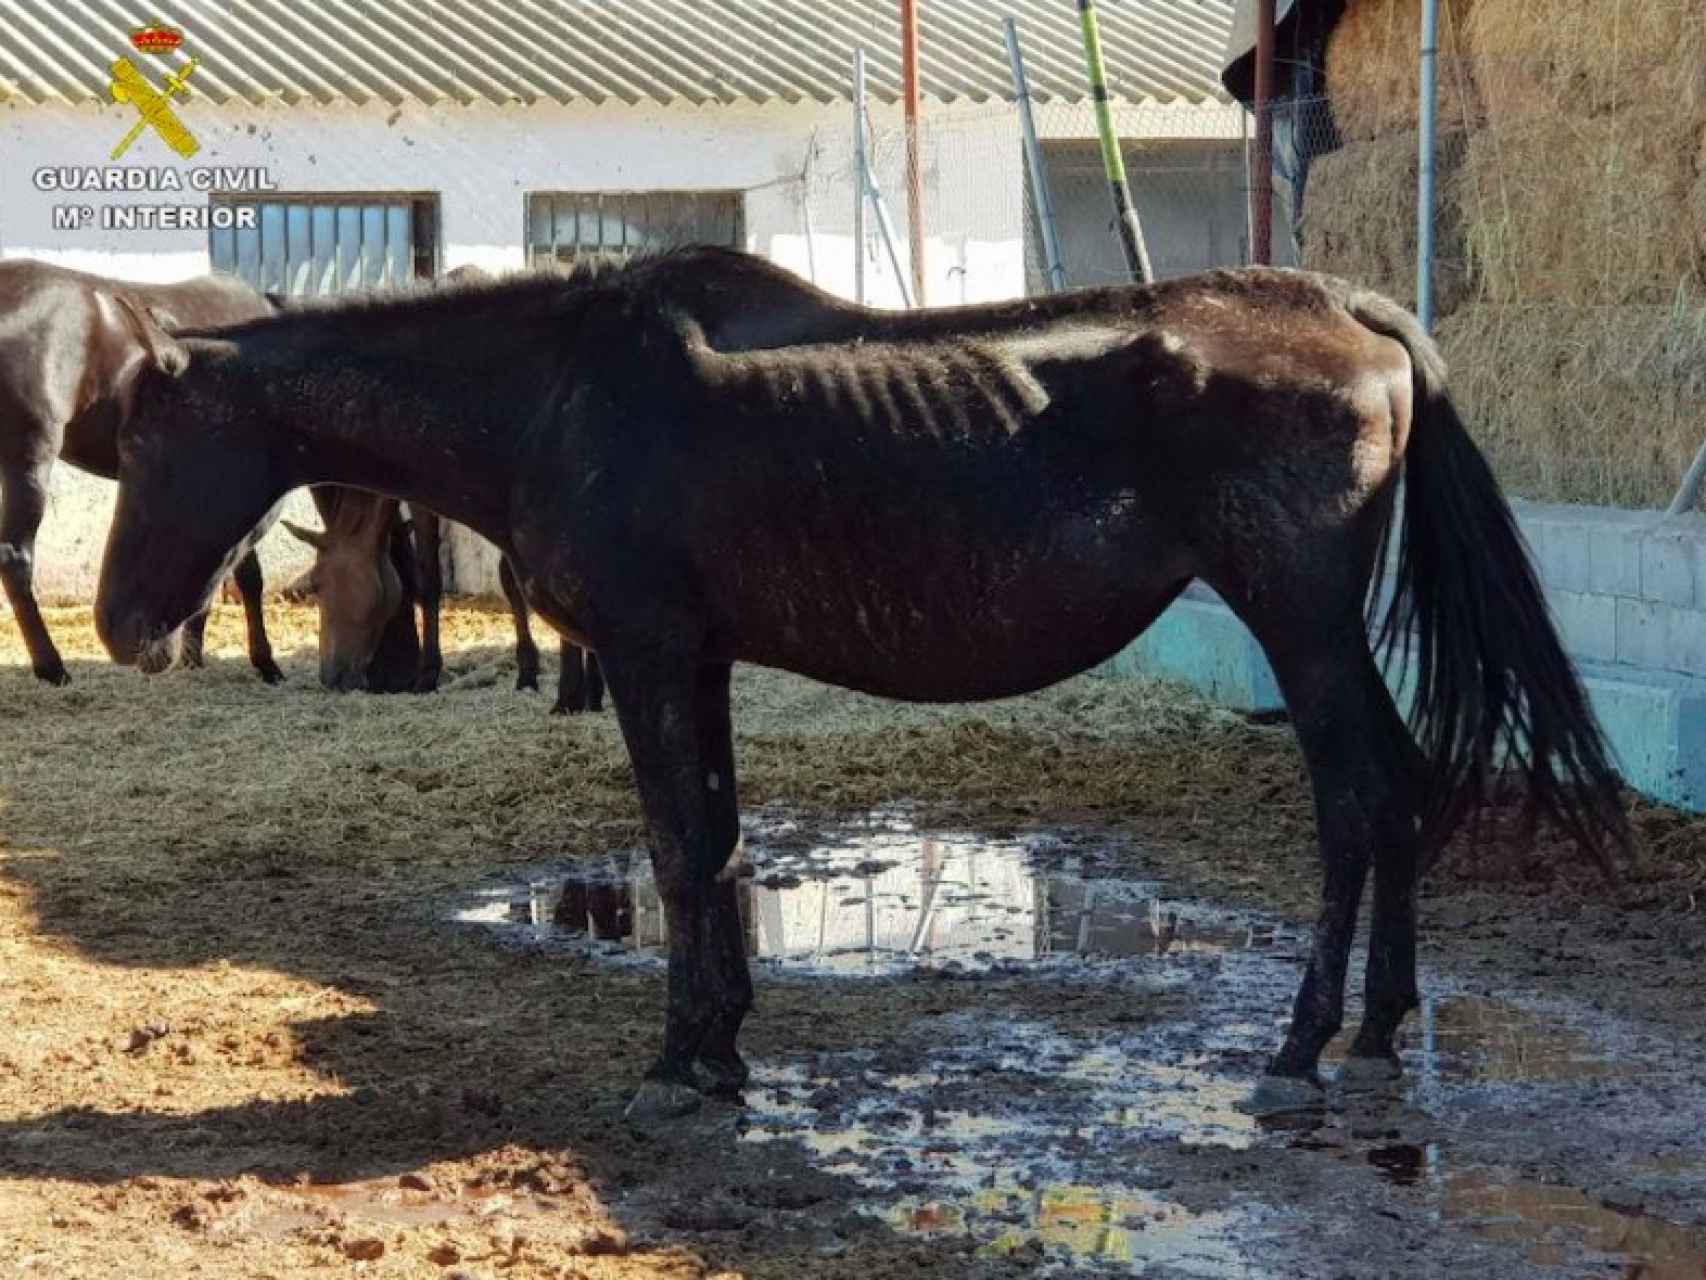 Uno de los caballos desnutridos que han sido encontrados en la granja desmantelada